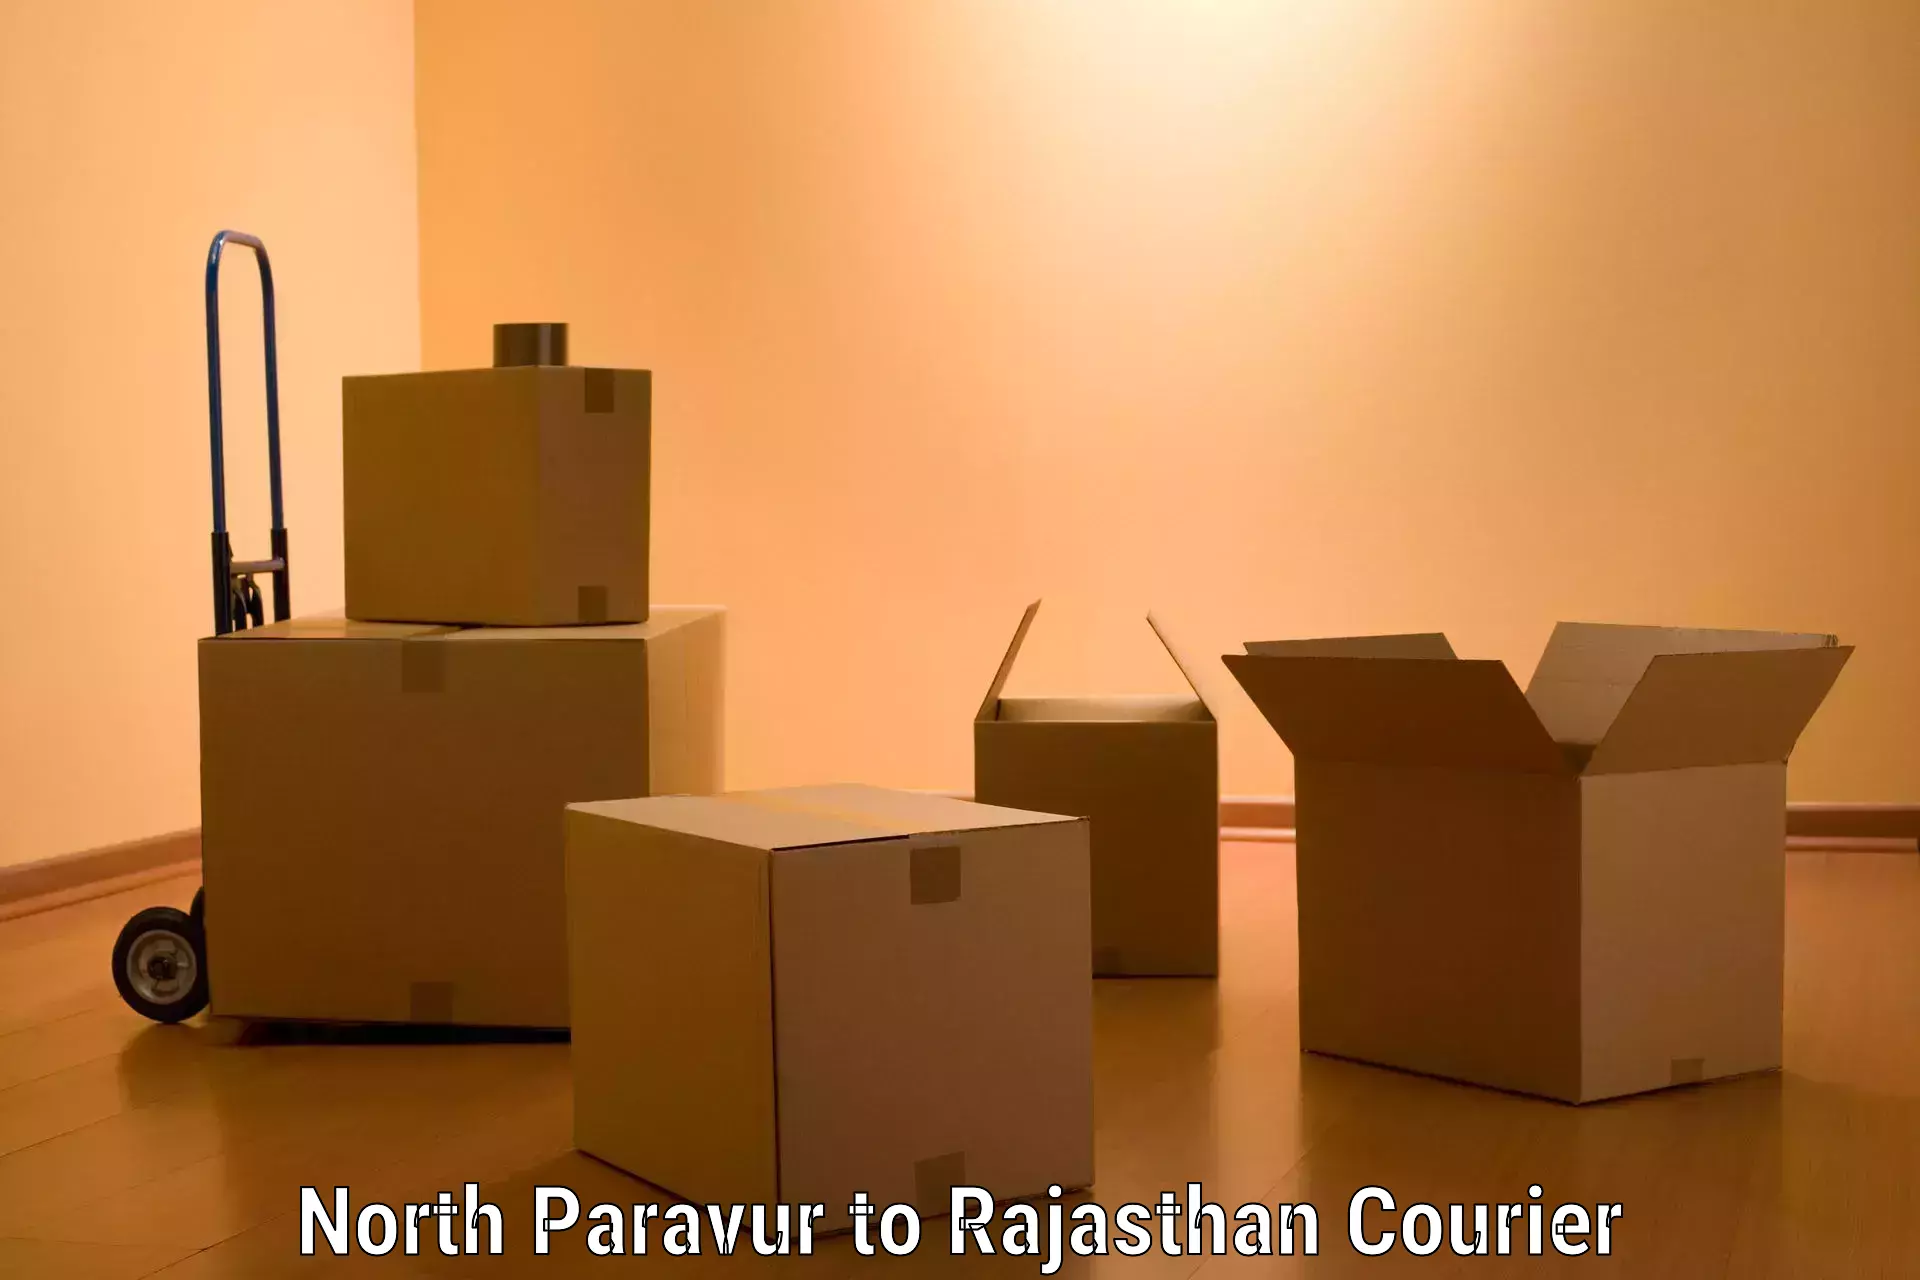 Quick furniture moving North Paravur to Banswara